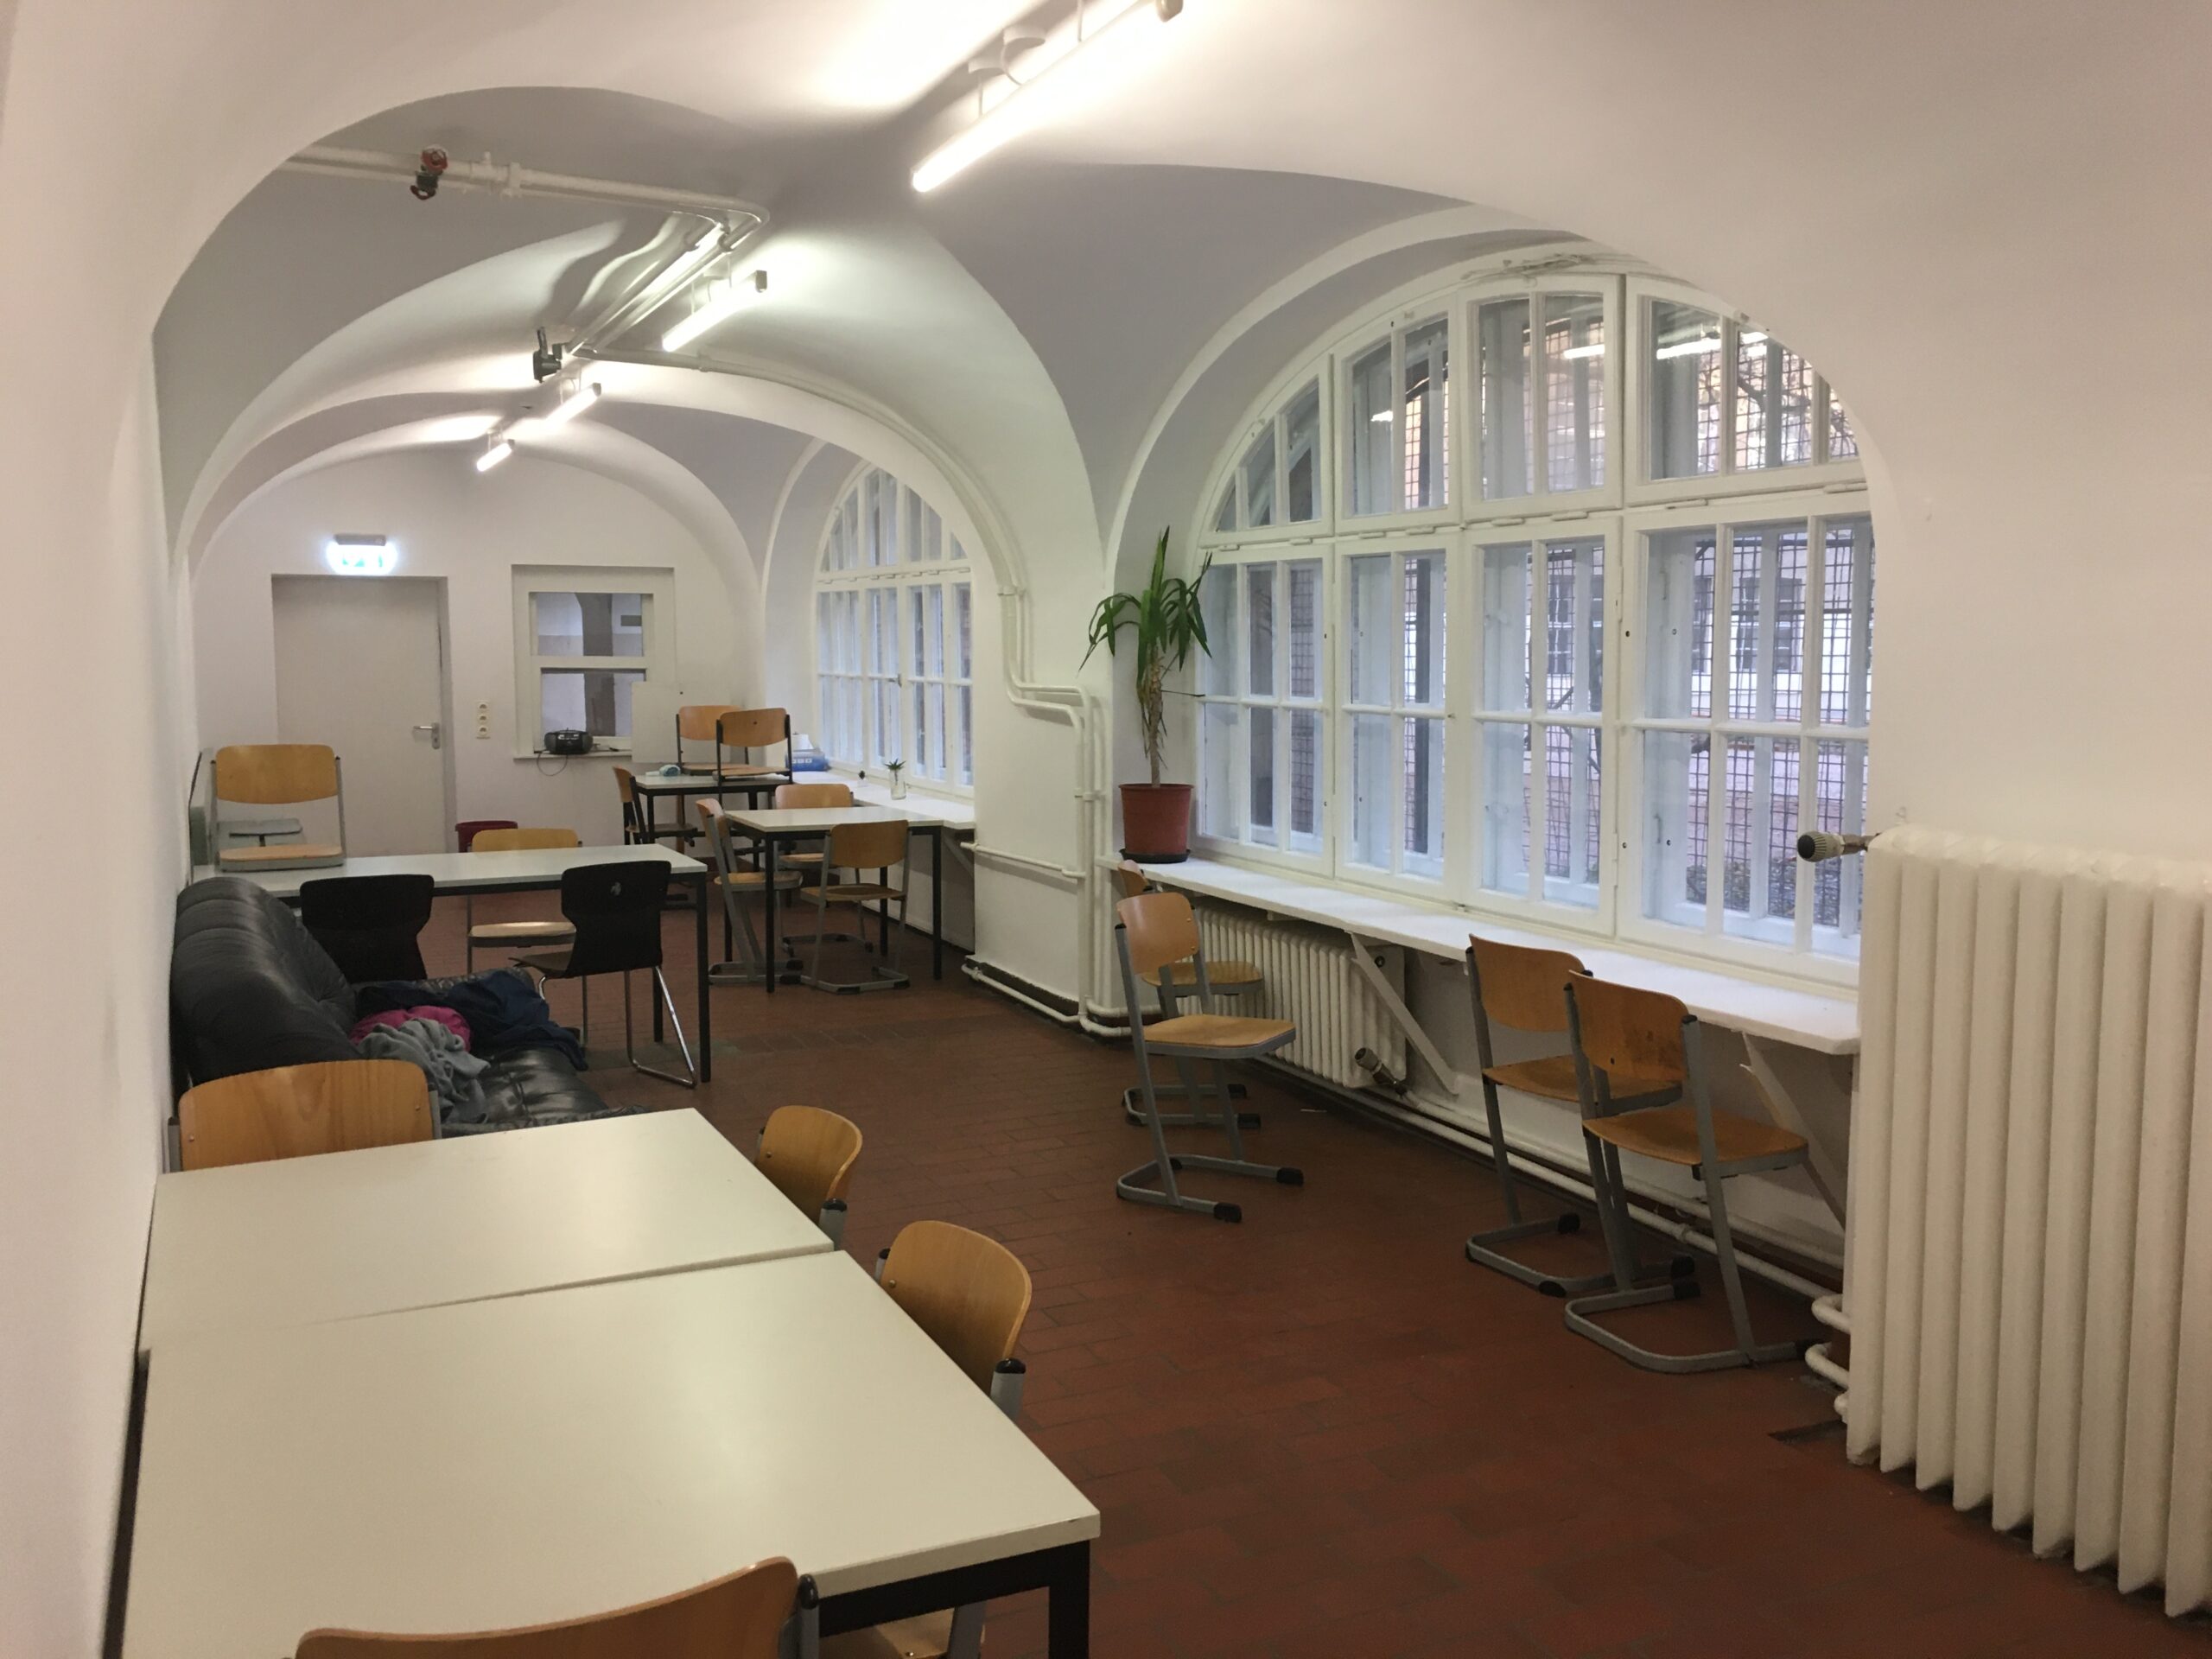 Die Eröffnung des Oberstufenraums – ein Meilenstein in der Geschichte des Arndt-Gymnasiums